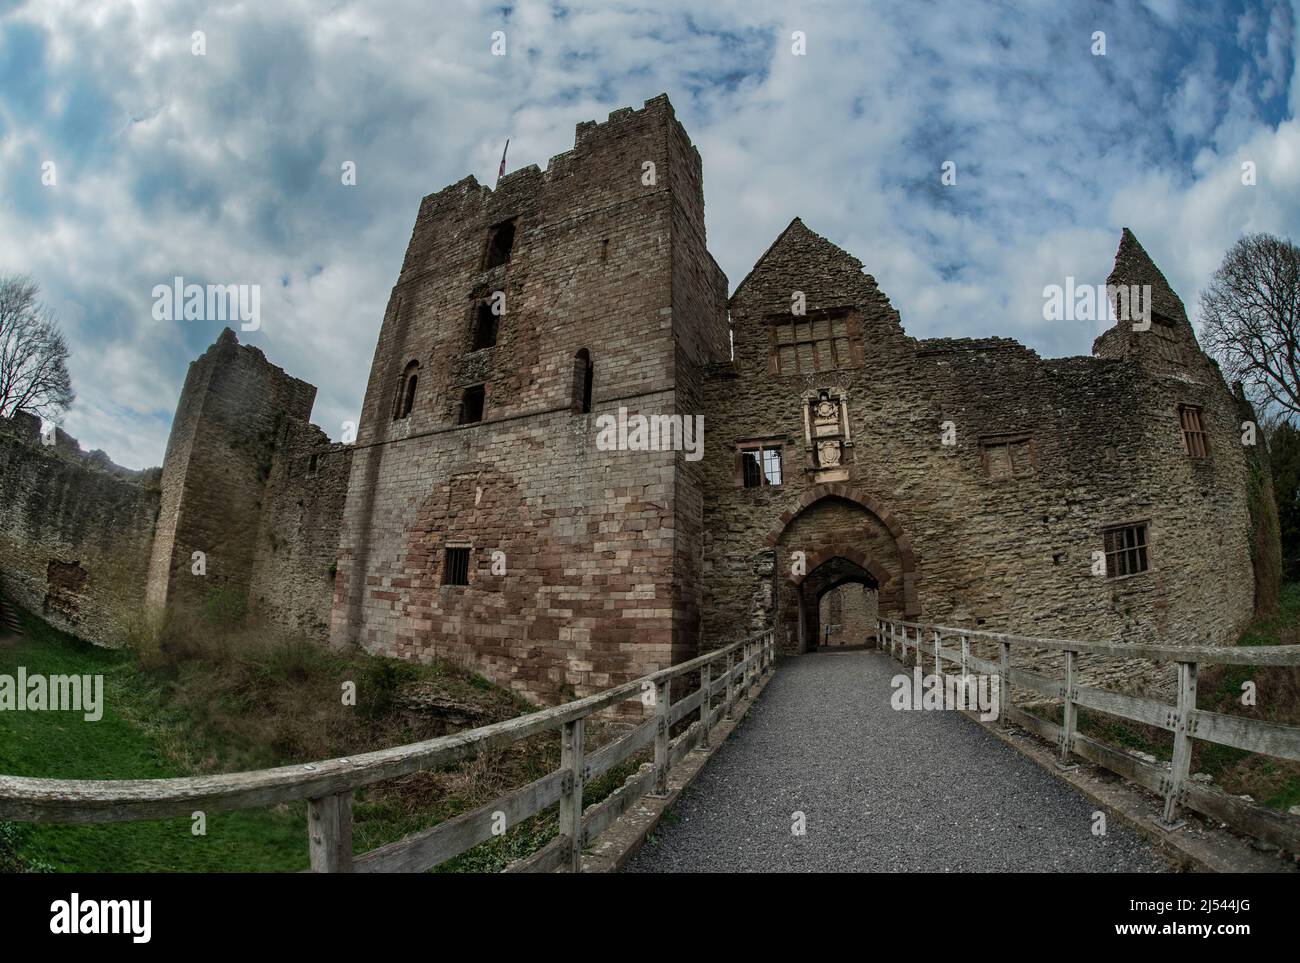 Le château de Ludlow est une fortification médiévale en ruines construite au 11th siècle à Ludlow, dans le comté anglais de Shropshire, surplombant la rivière Teme. Banque D'Images